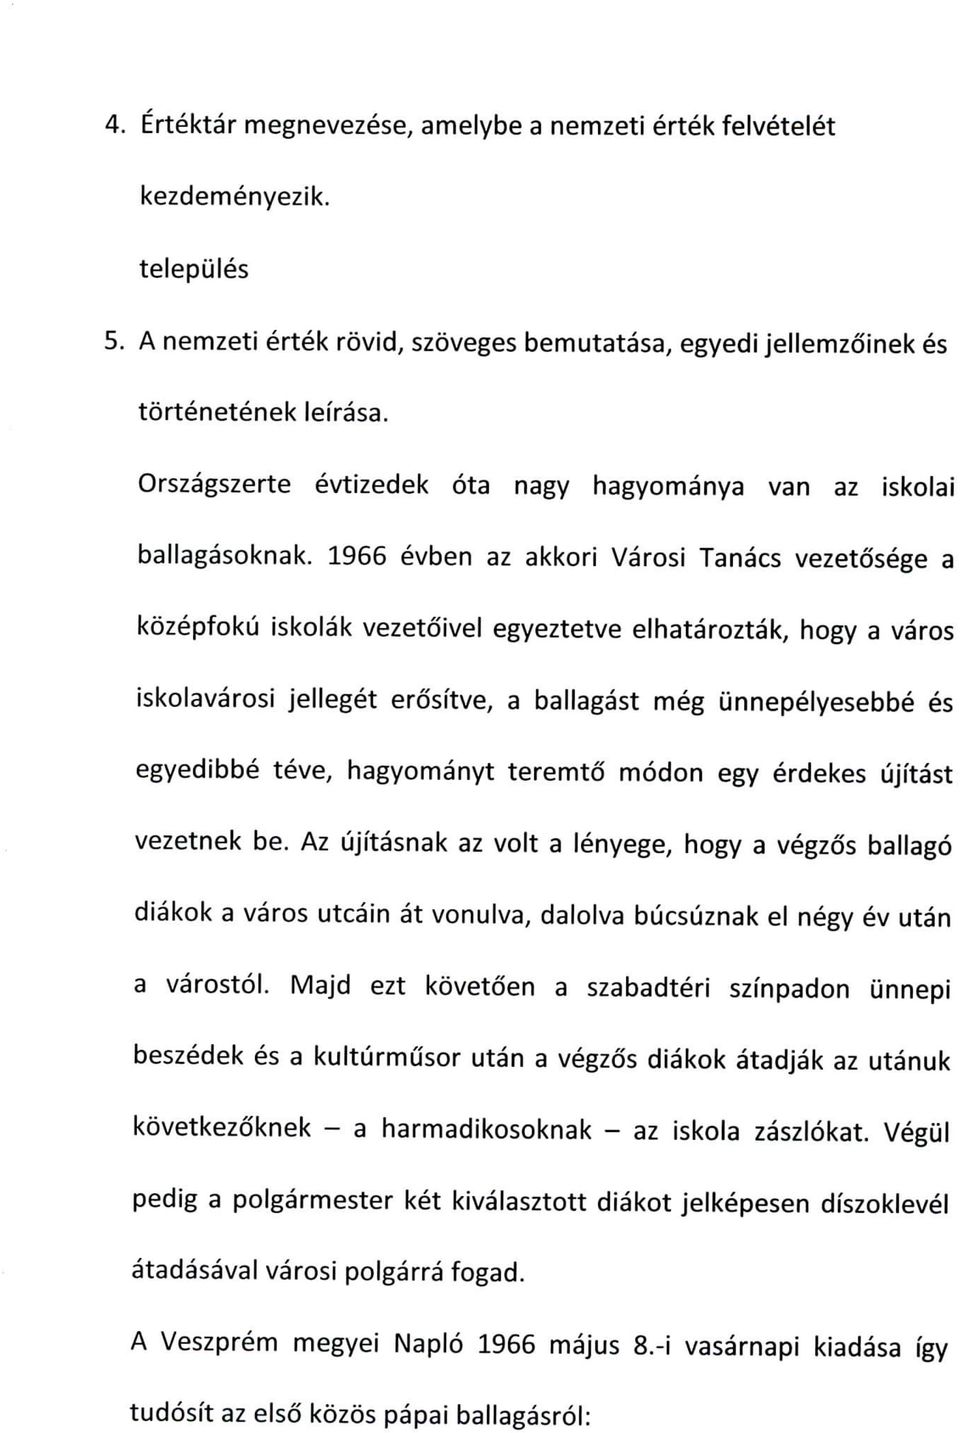 1966 evben az akkori Varosi Tanacs vezetdsege a kozepfoku iskolak vezetoivel egyeztetve elhataroztak, hogy a varos iskolavarosi jelleget erositve; a ballagast meg unnepelyesebbe es egyedibbe teve,